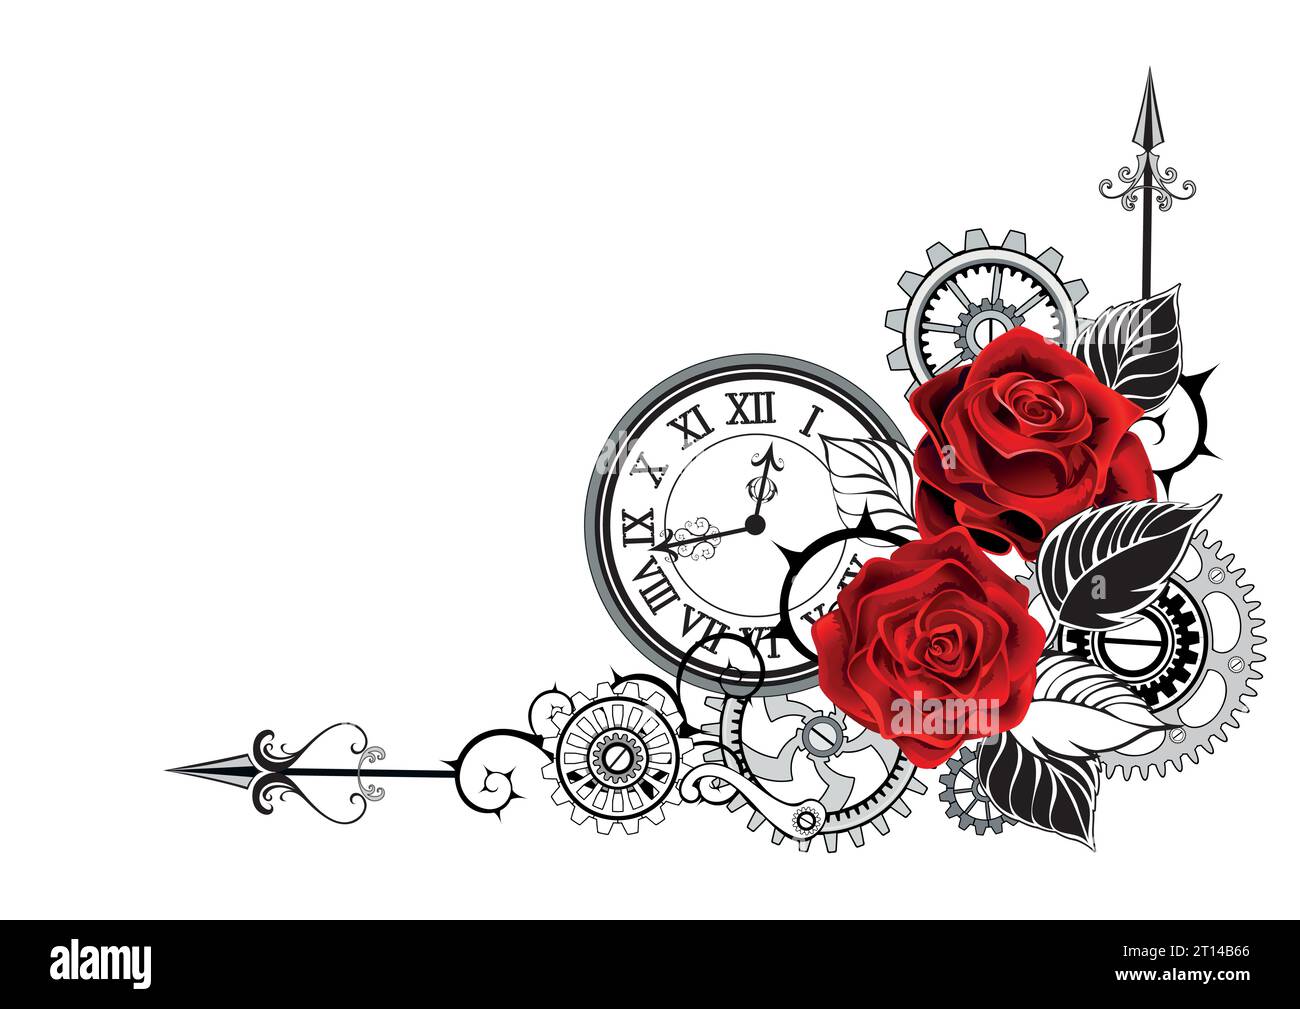 Élégante composition de coin de roses rouges, fleuries, dessinées artistiquement, décorées de feuilles noires avec horloge contour, engrenages sur fond blanc. STEA Illustration de Vecteur